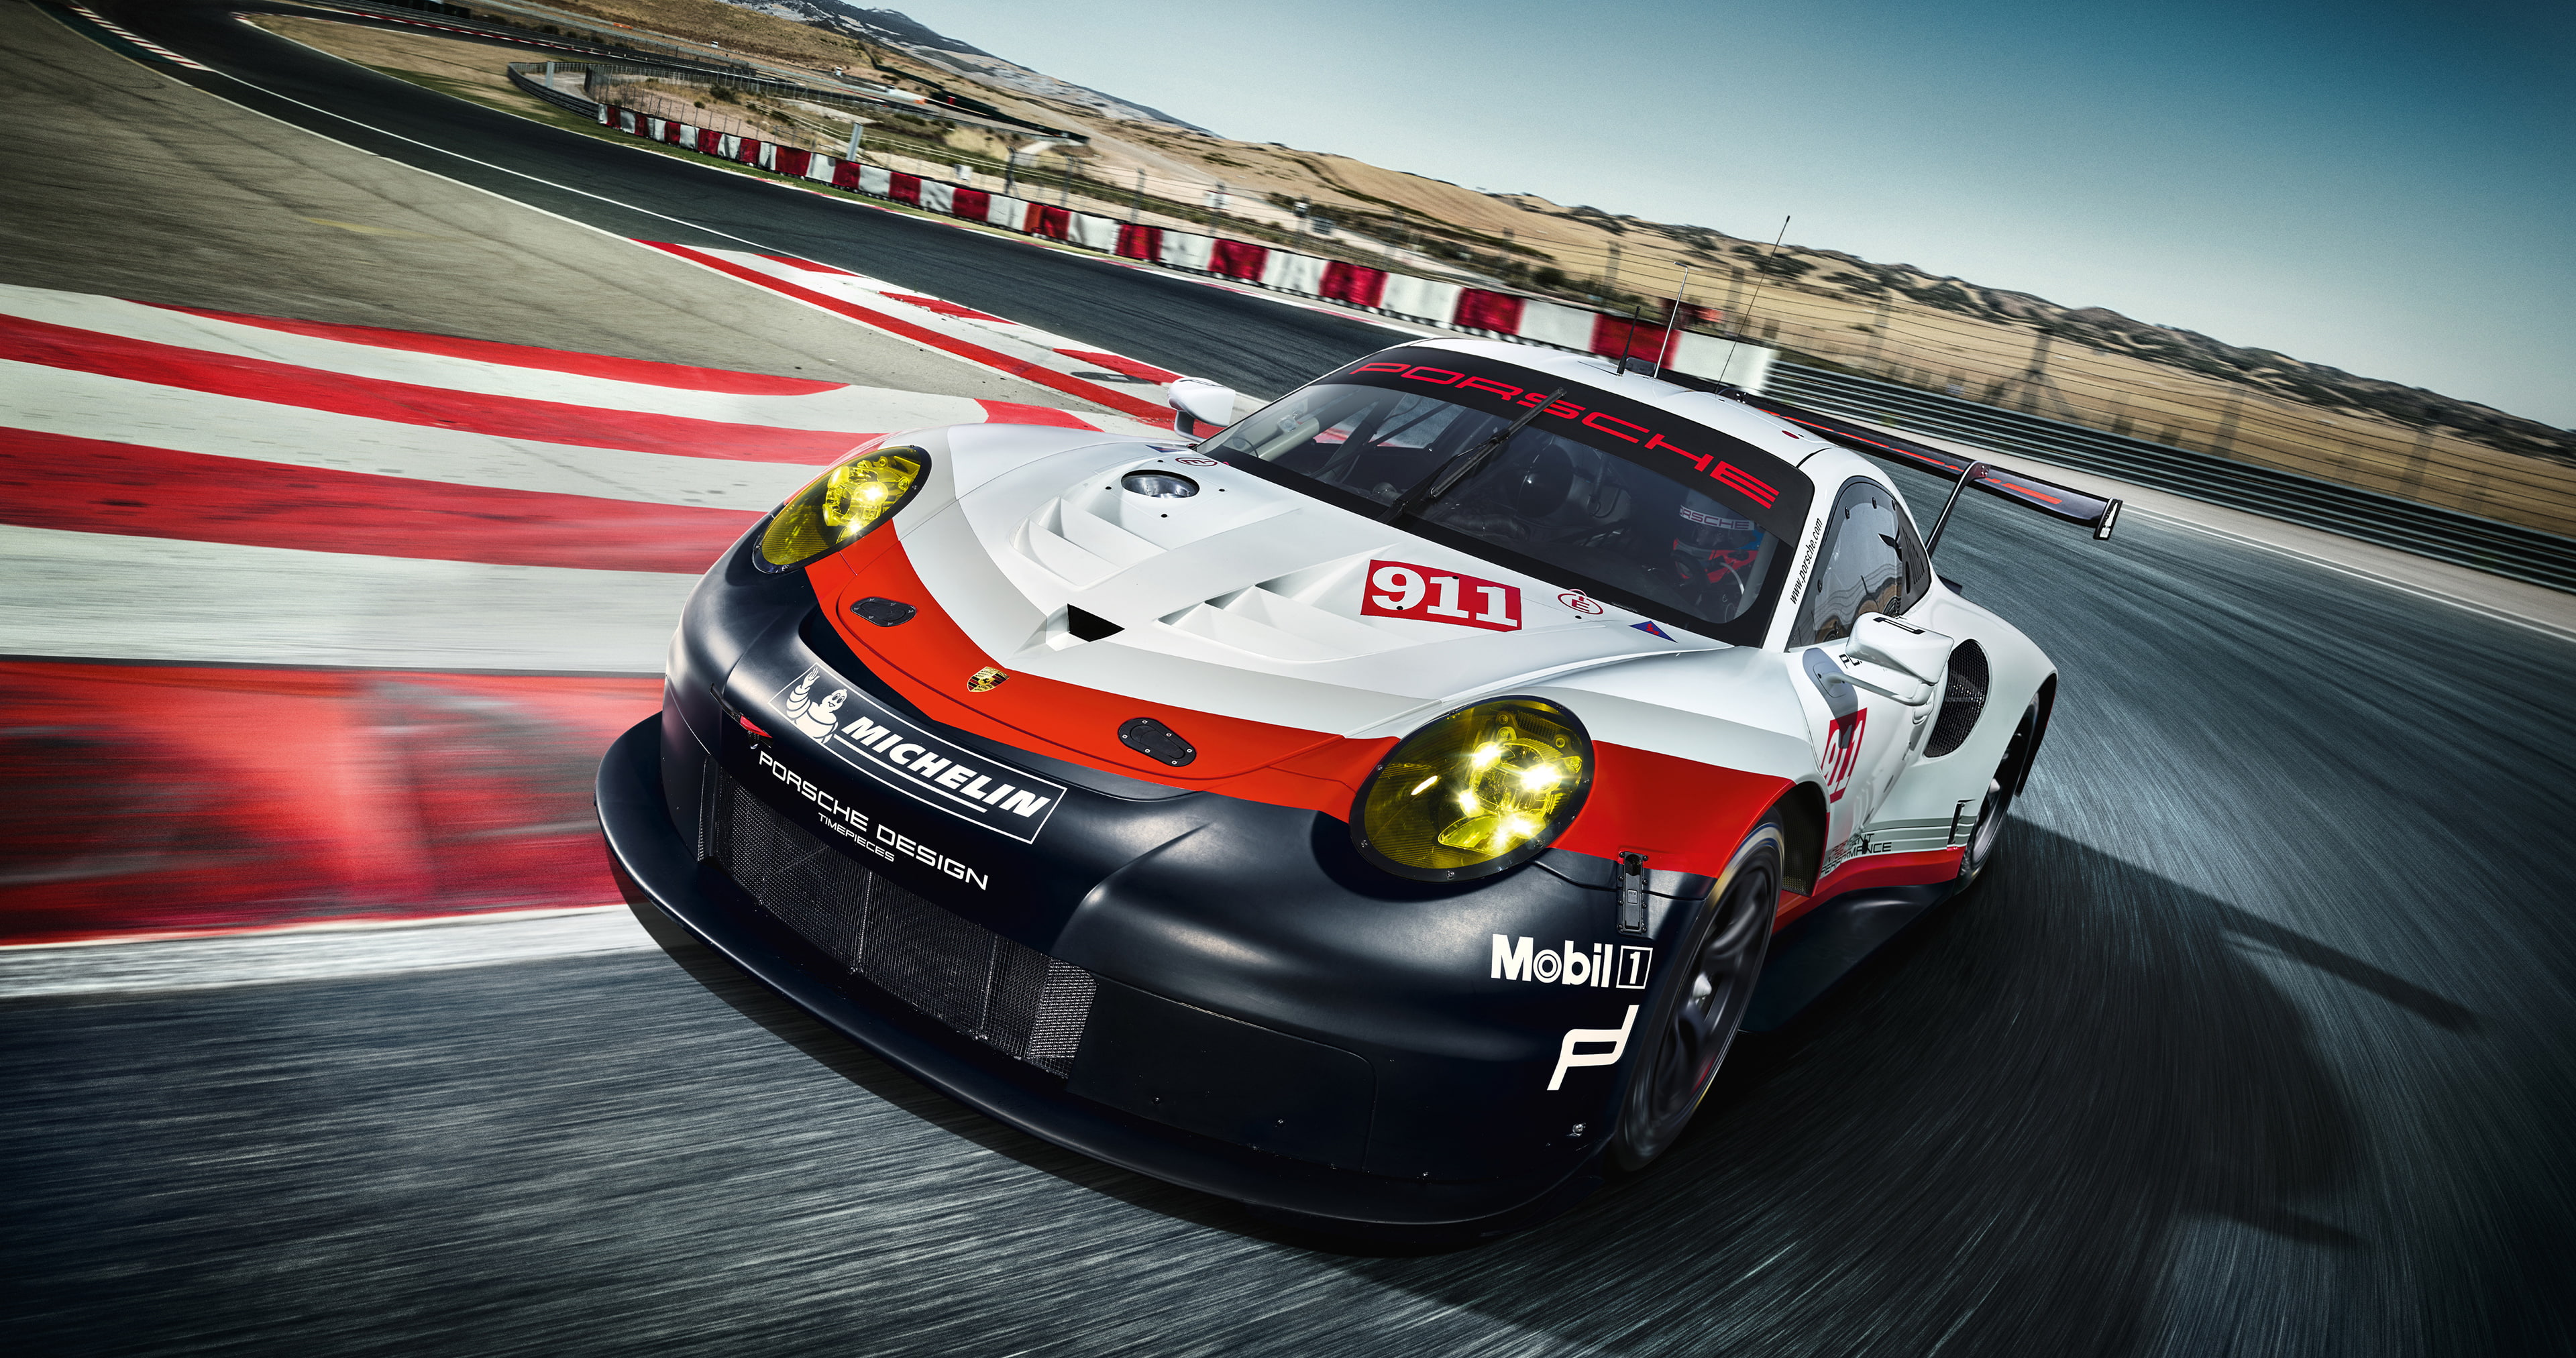 2017, Porsche 911 RSR, mode of transportation, speed, sports race